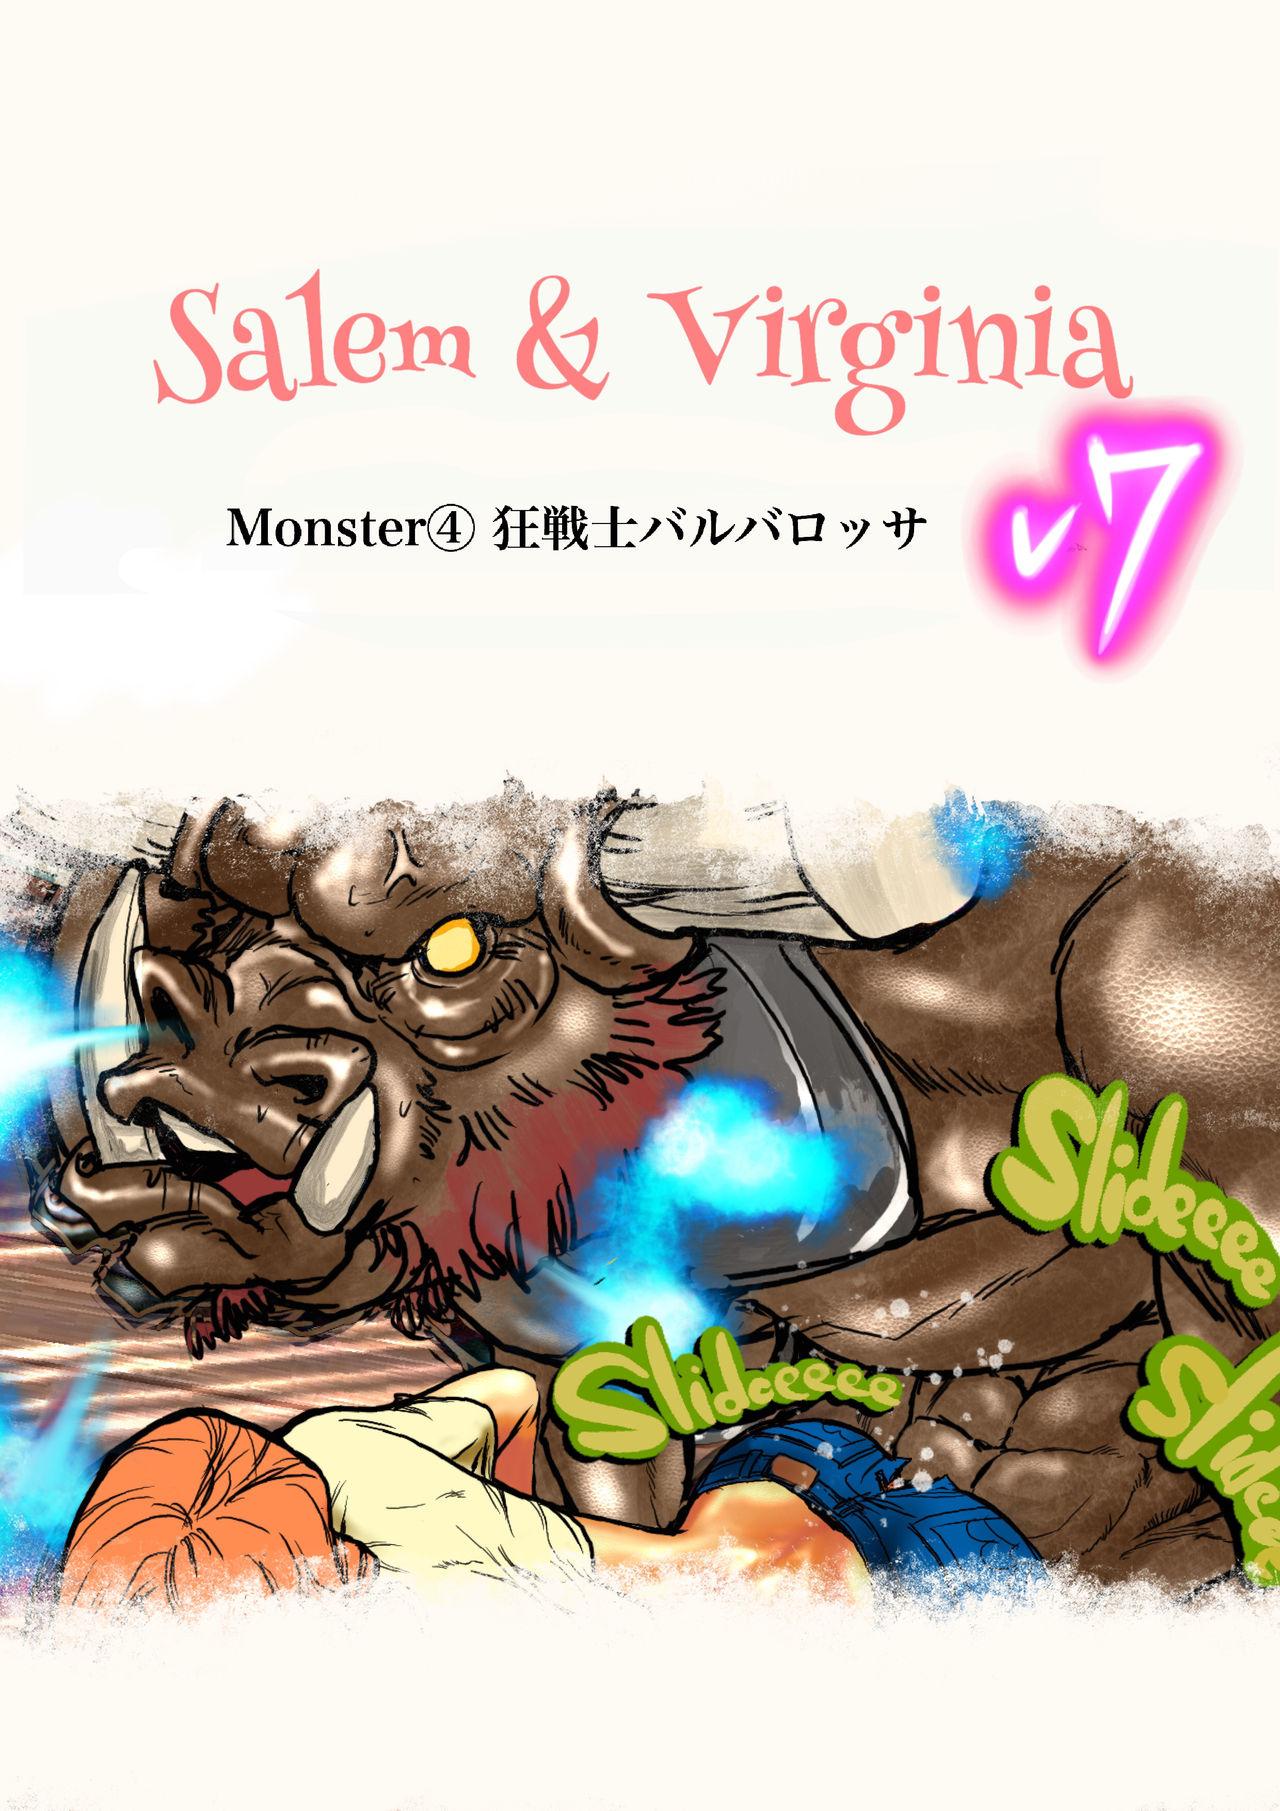 Salem & Virginia 110